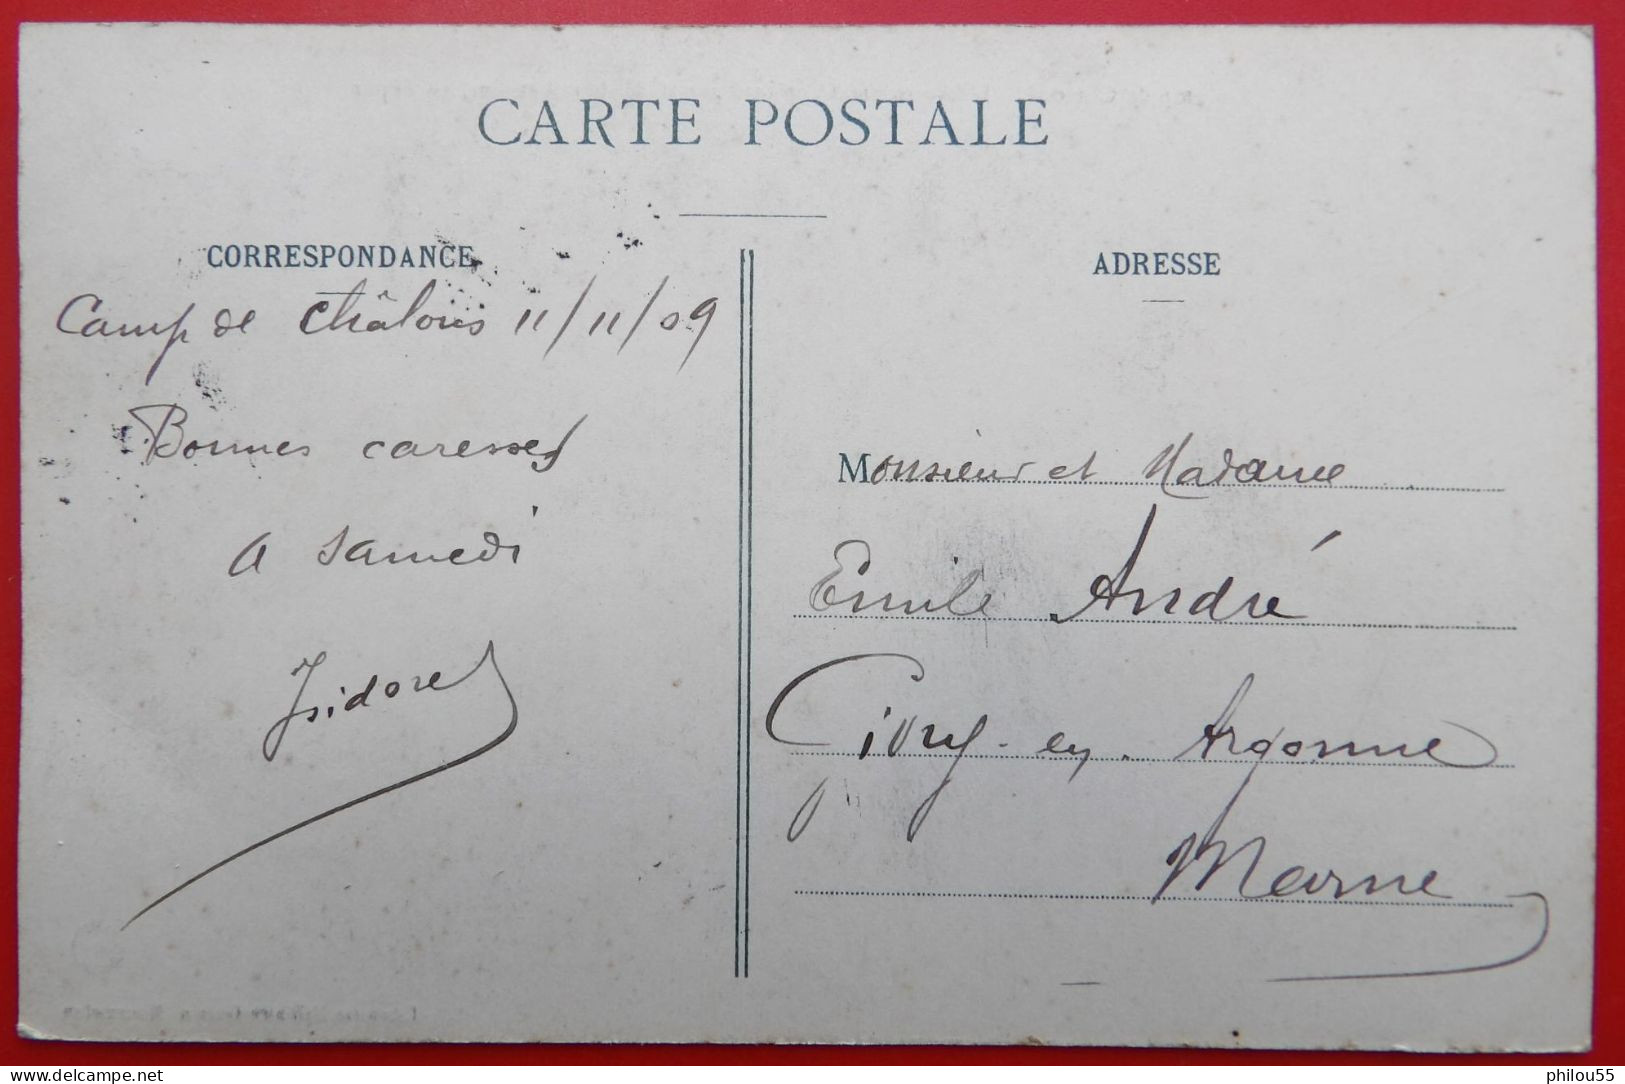 Cpa Camp De Chalons ANTOINETTE IV Hubert LATHAM Au Depart - ....-1914: Précurseurs